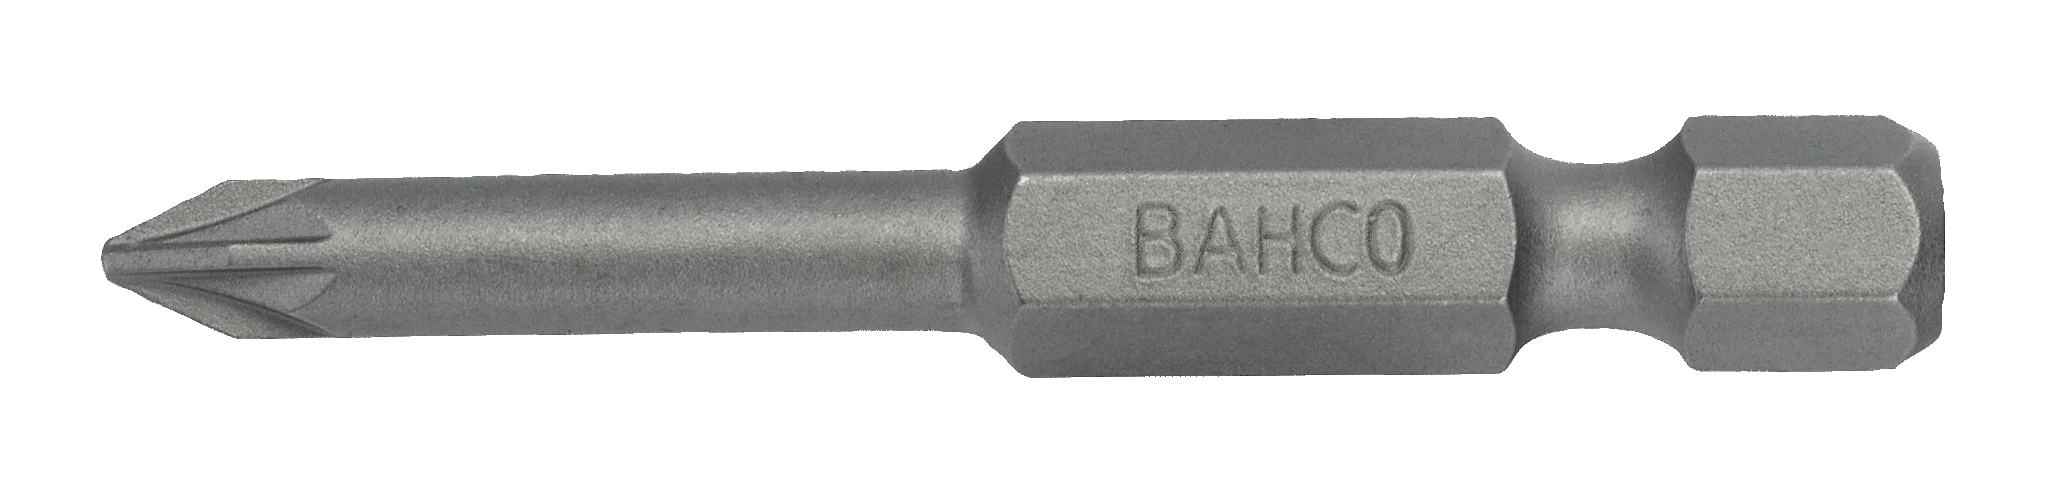 картинка Стандартные биты для отверток Pozidriv, 50 мм BAHCO 59S/50PZ3-2P от магазина "Элит-инструмент"